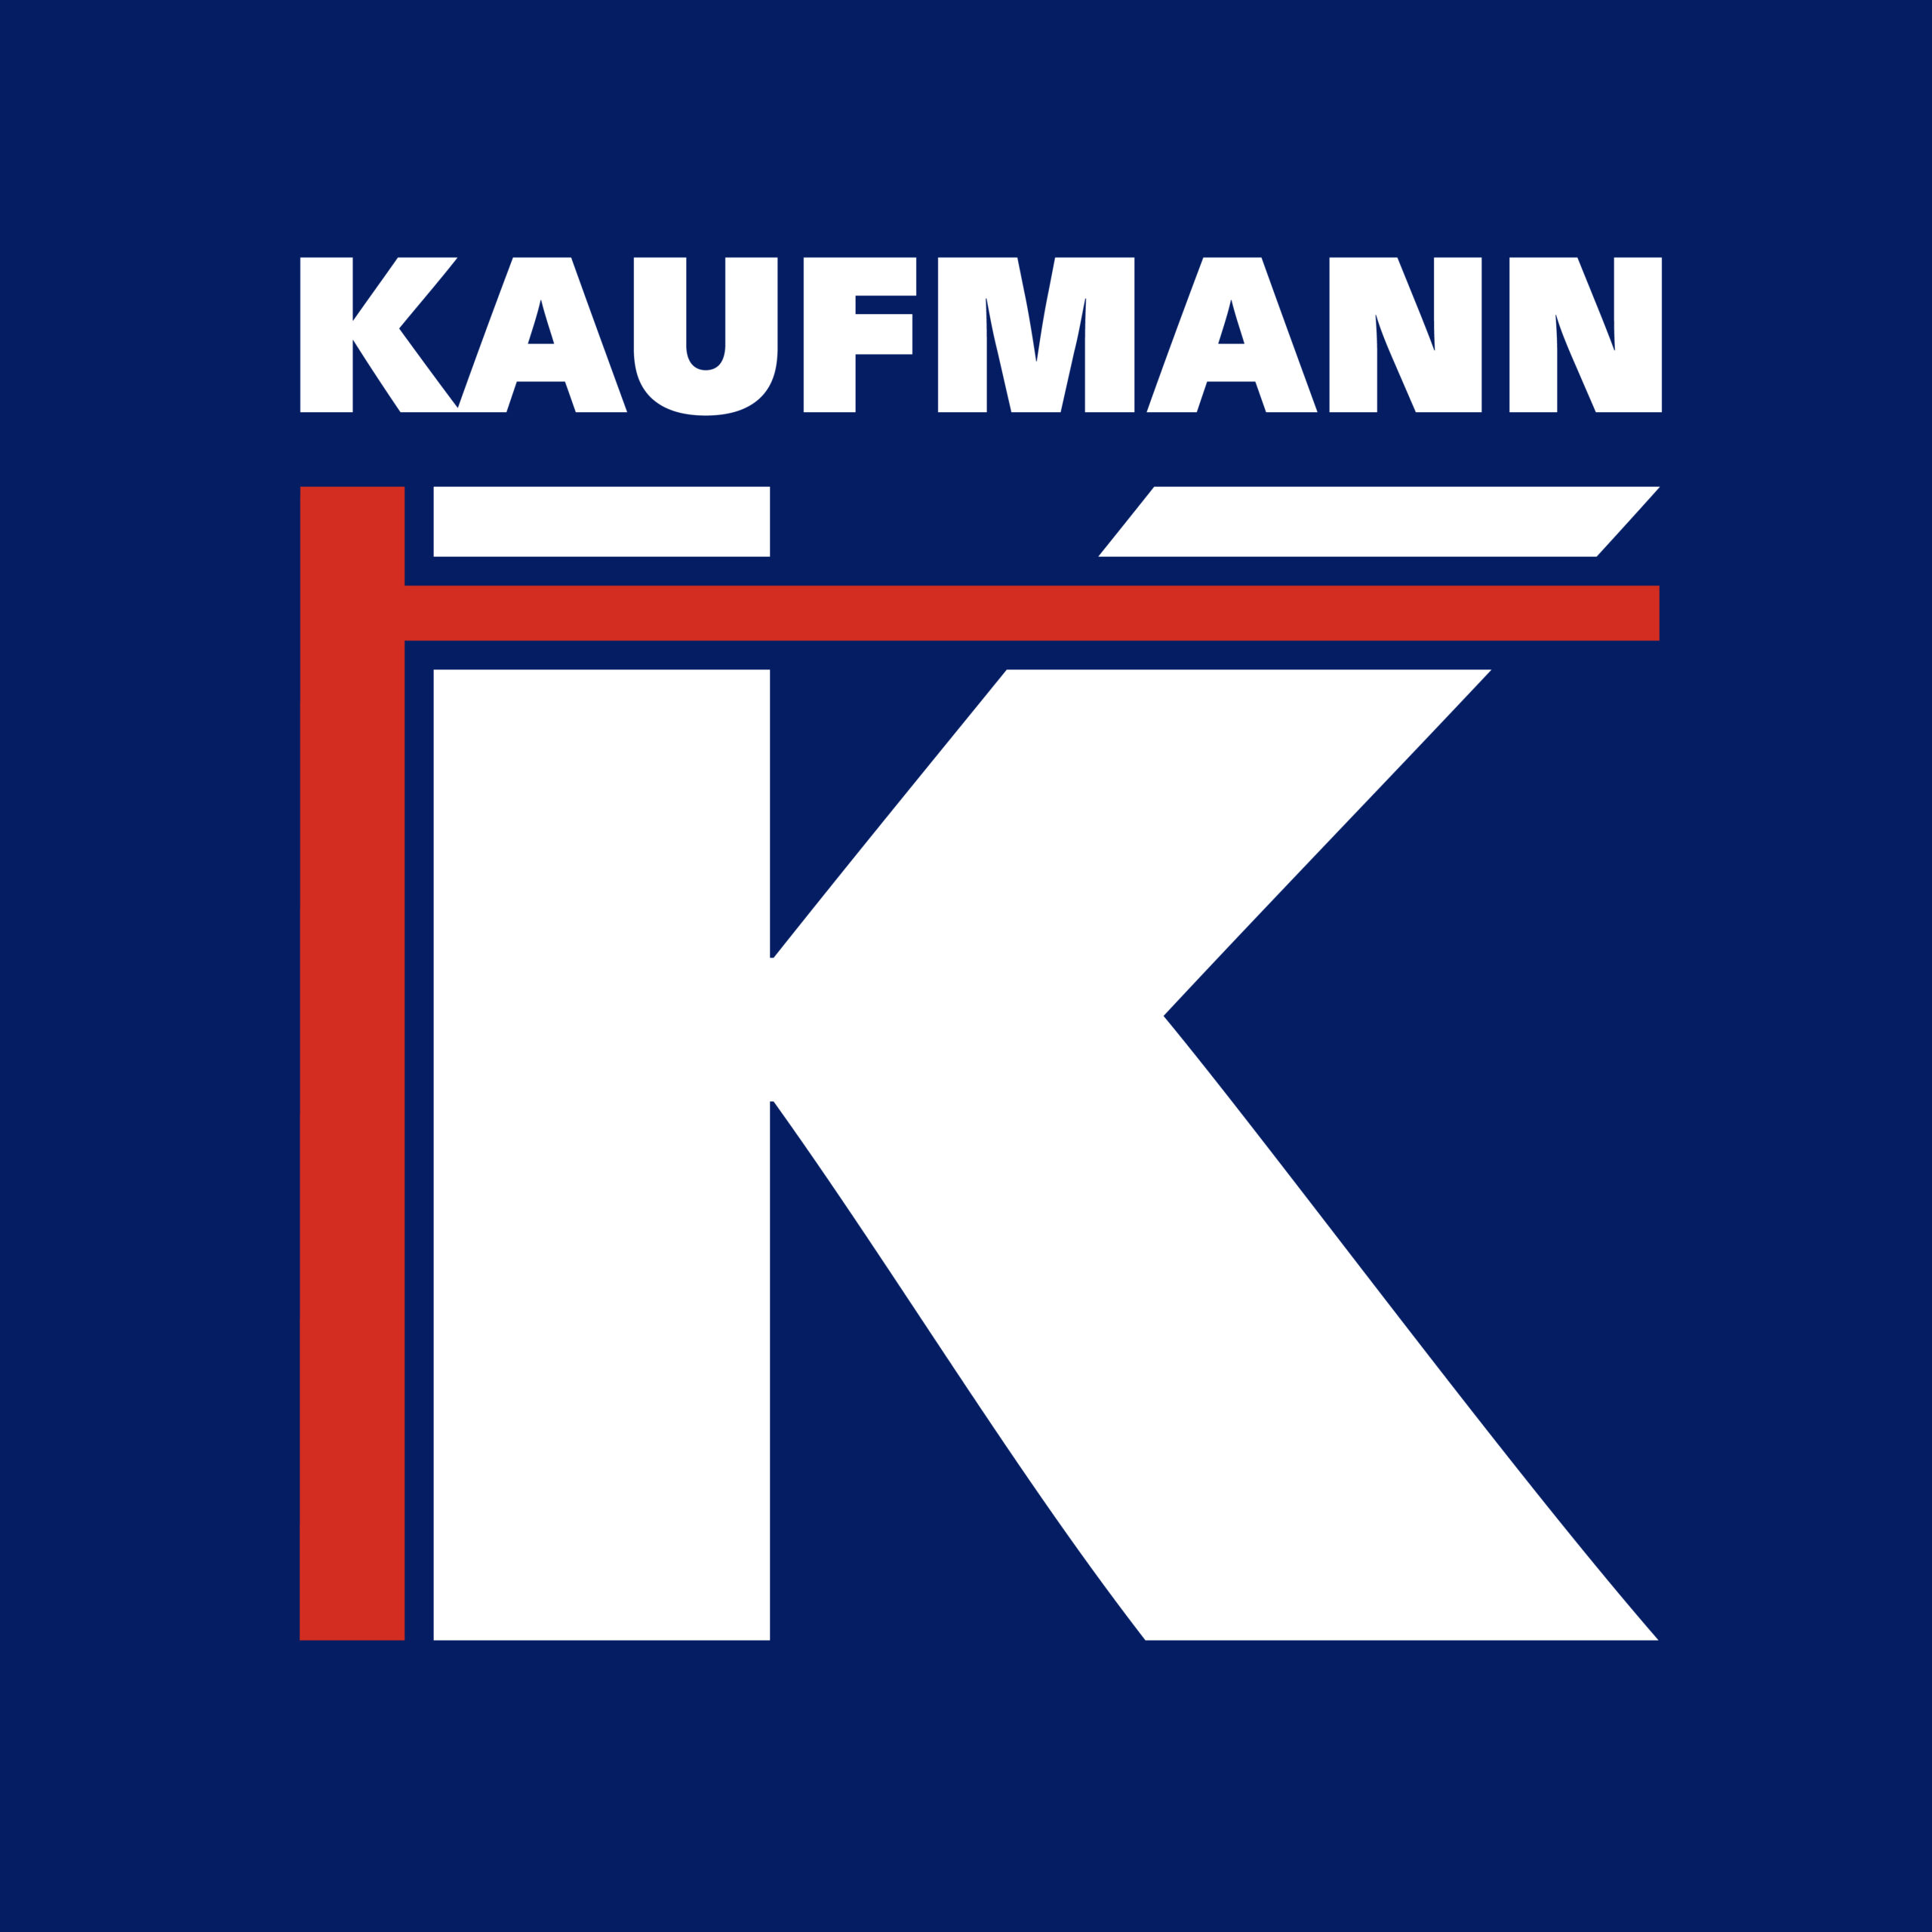 Logo Kaufmann sur bleu.jpg